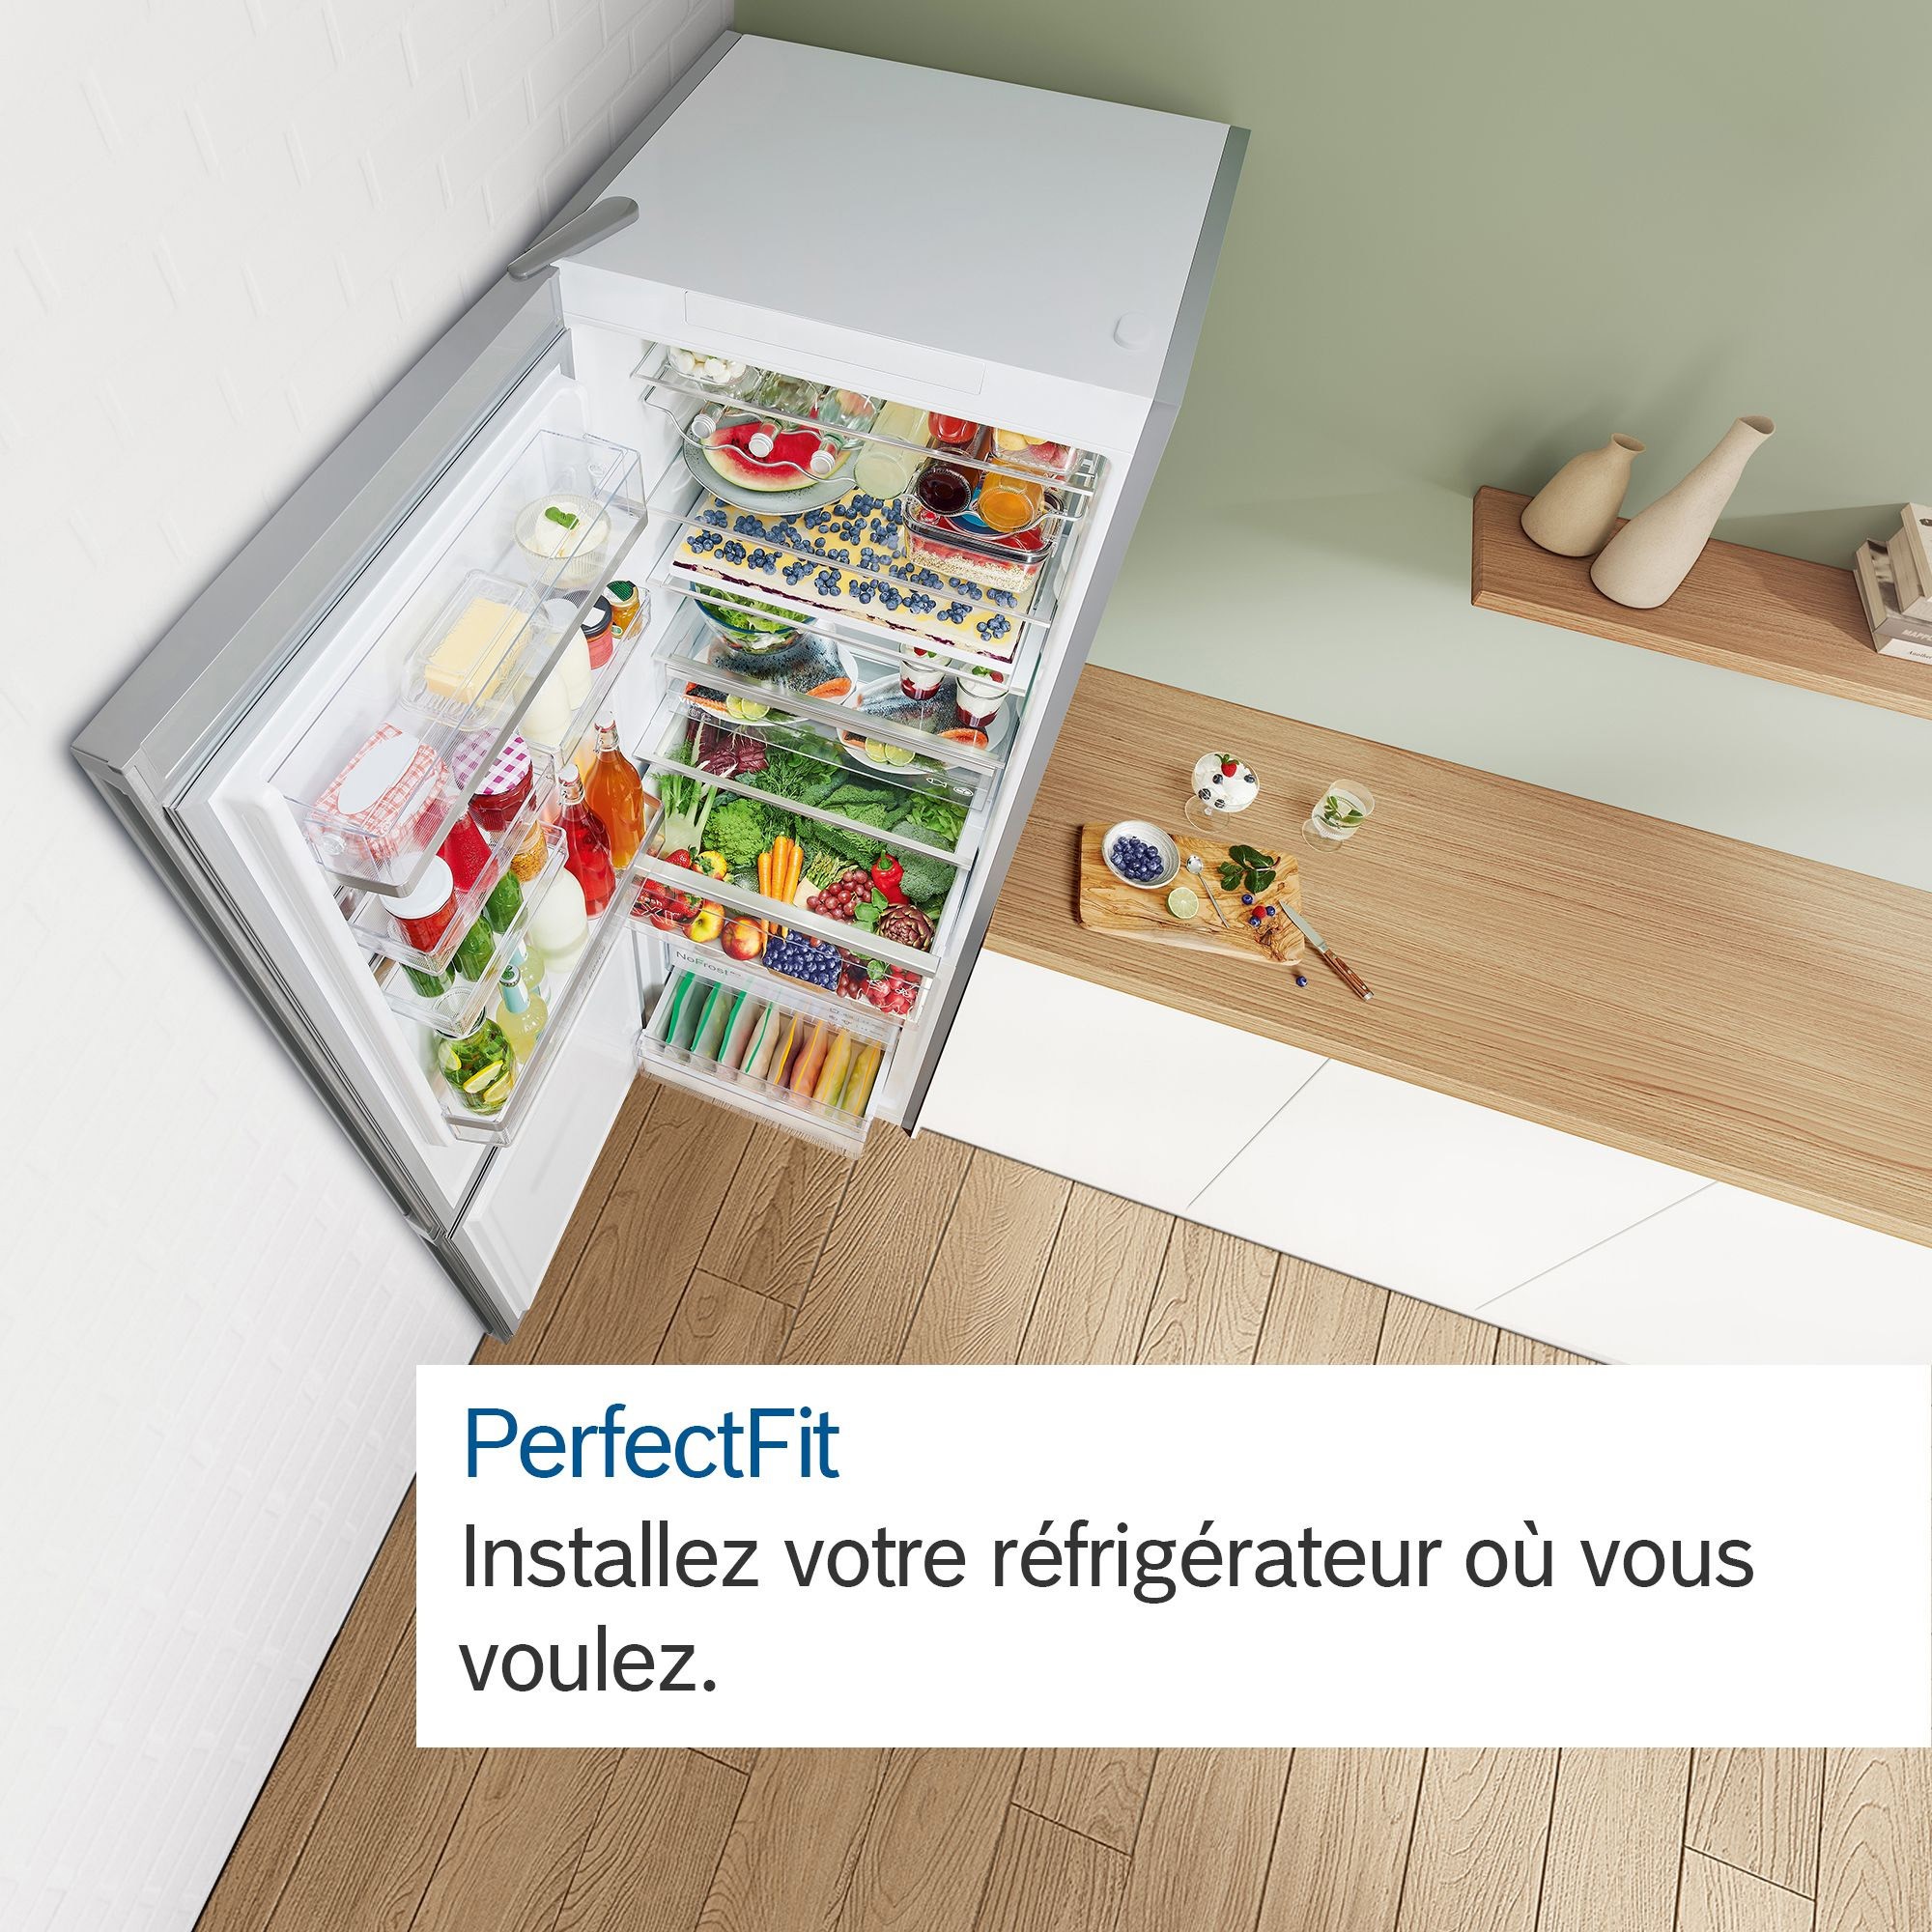 BOSCH Réfrigérateur congélateur bas No Frost 631L Inox - KGN86VIEA